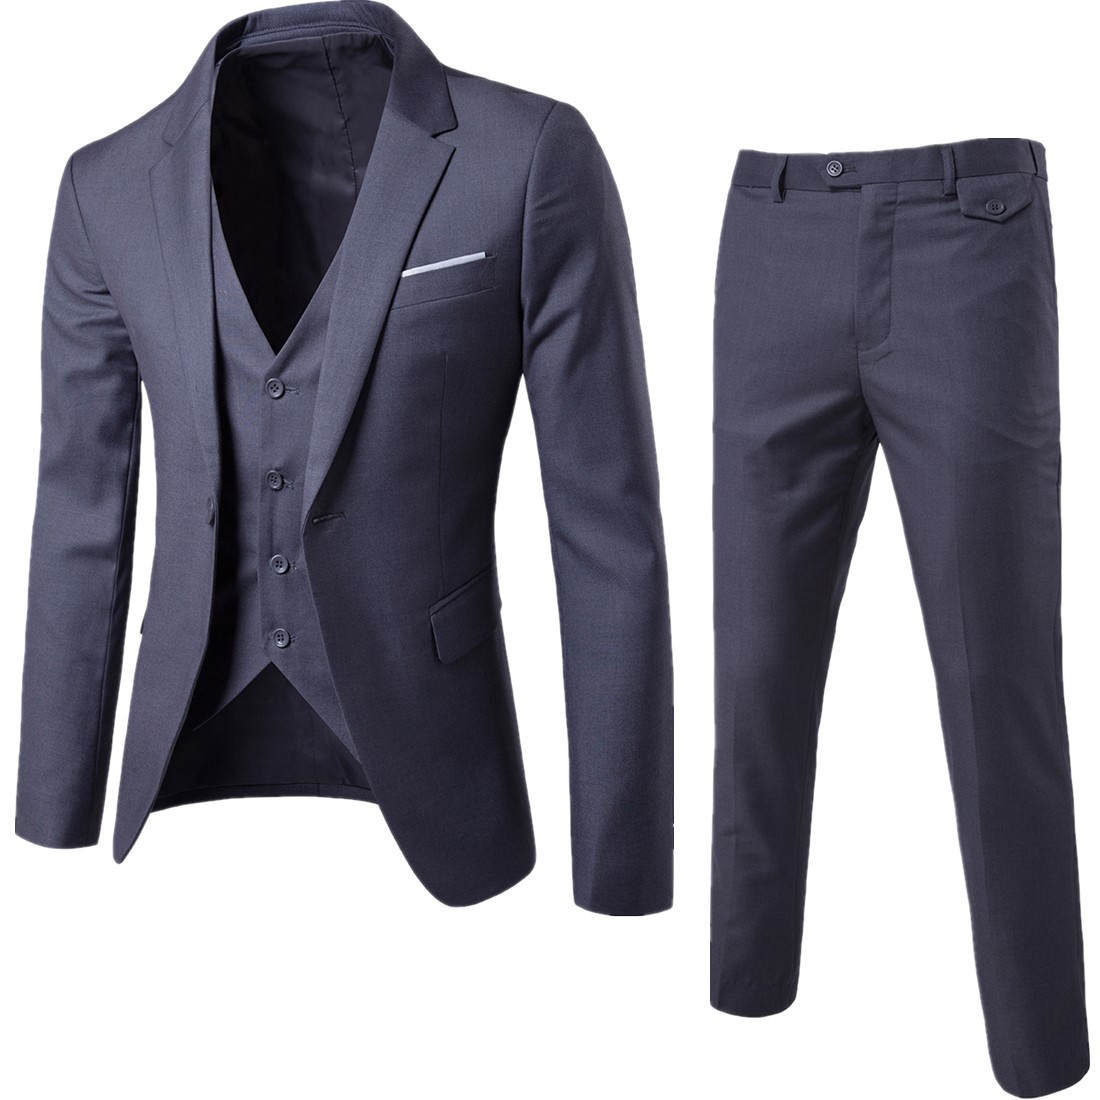 2019 foreign trade new men's fashion business two piece suit suit South Korean slim suit coat manufacturer direct sales